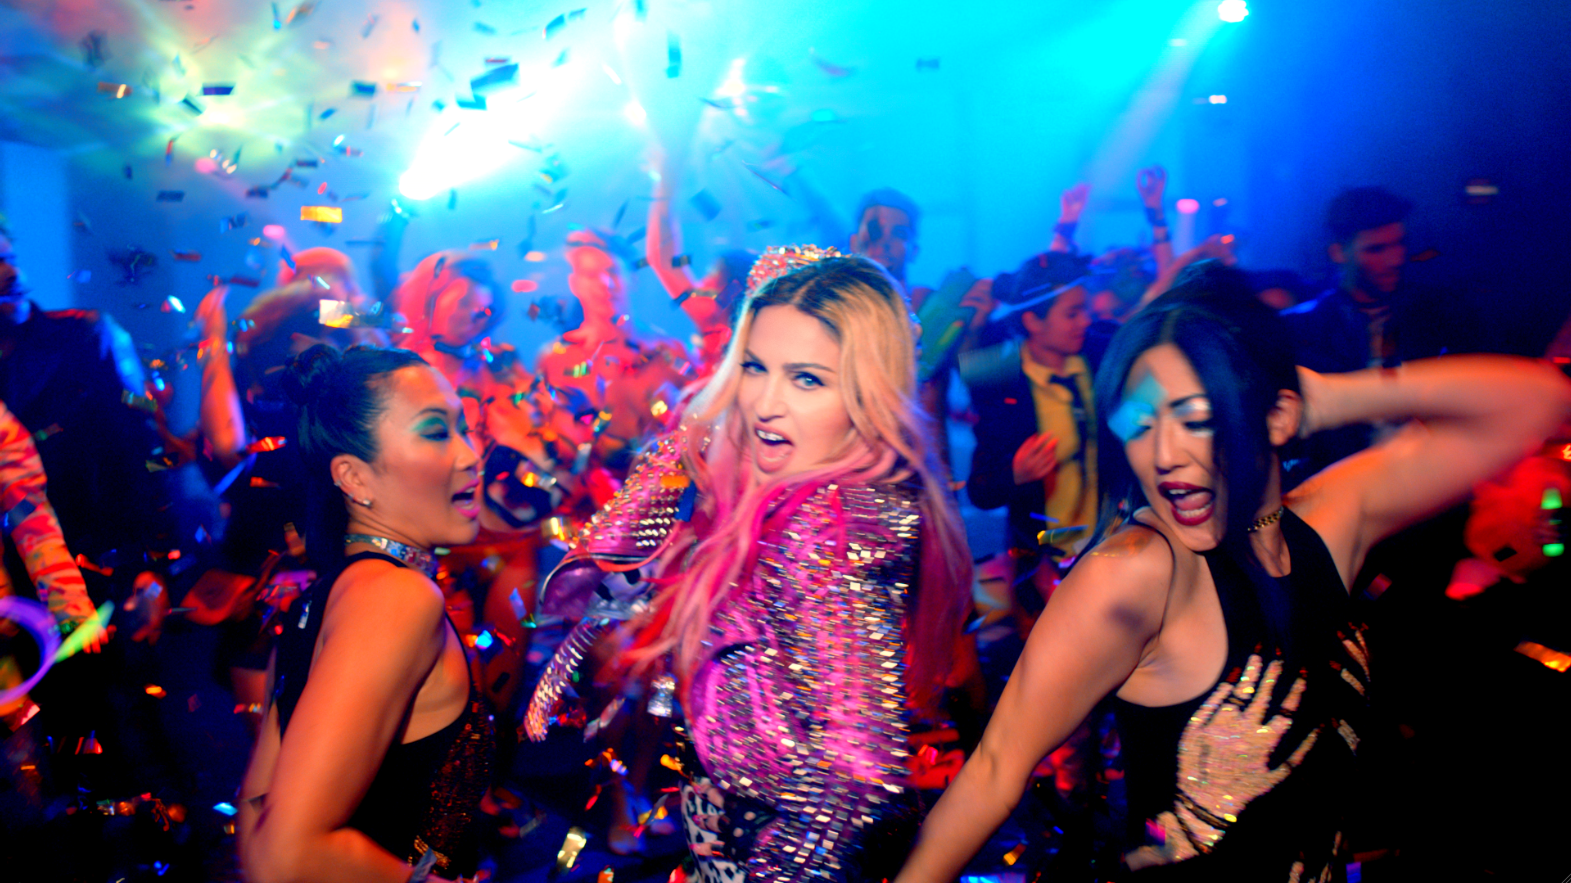 瑪丹娜在「Bitch I'm Madonna」MV中上演派對狂歡